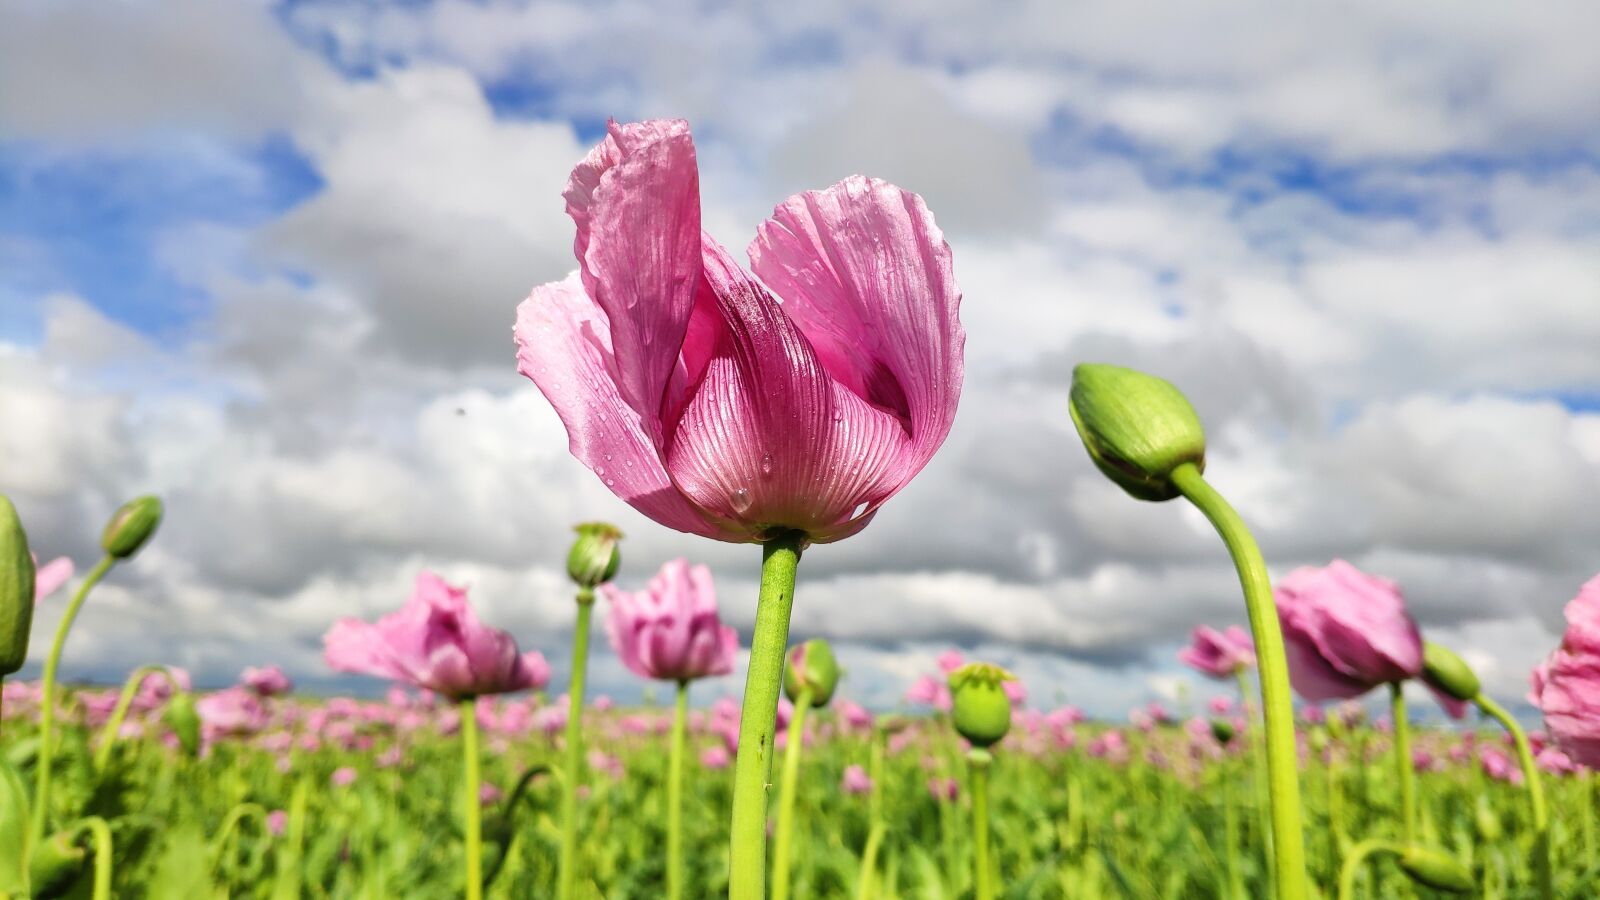 Xiaomi Mi MIX 2S sample photo. Flower, poppy, sky photography